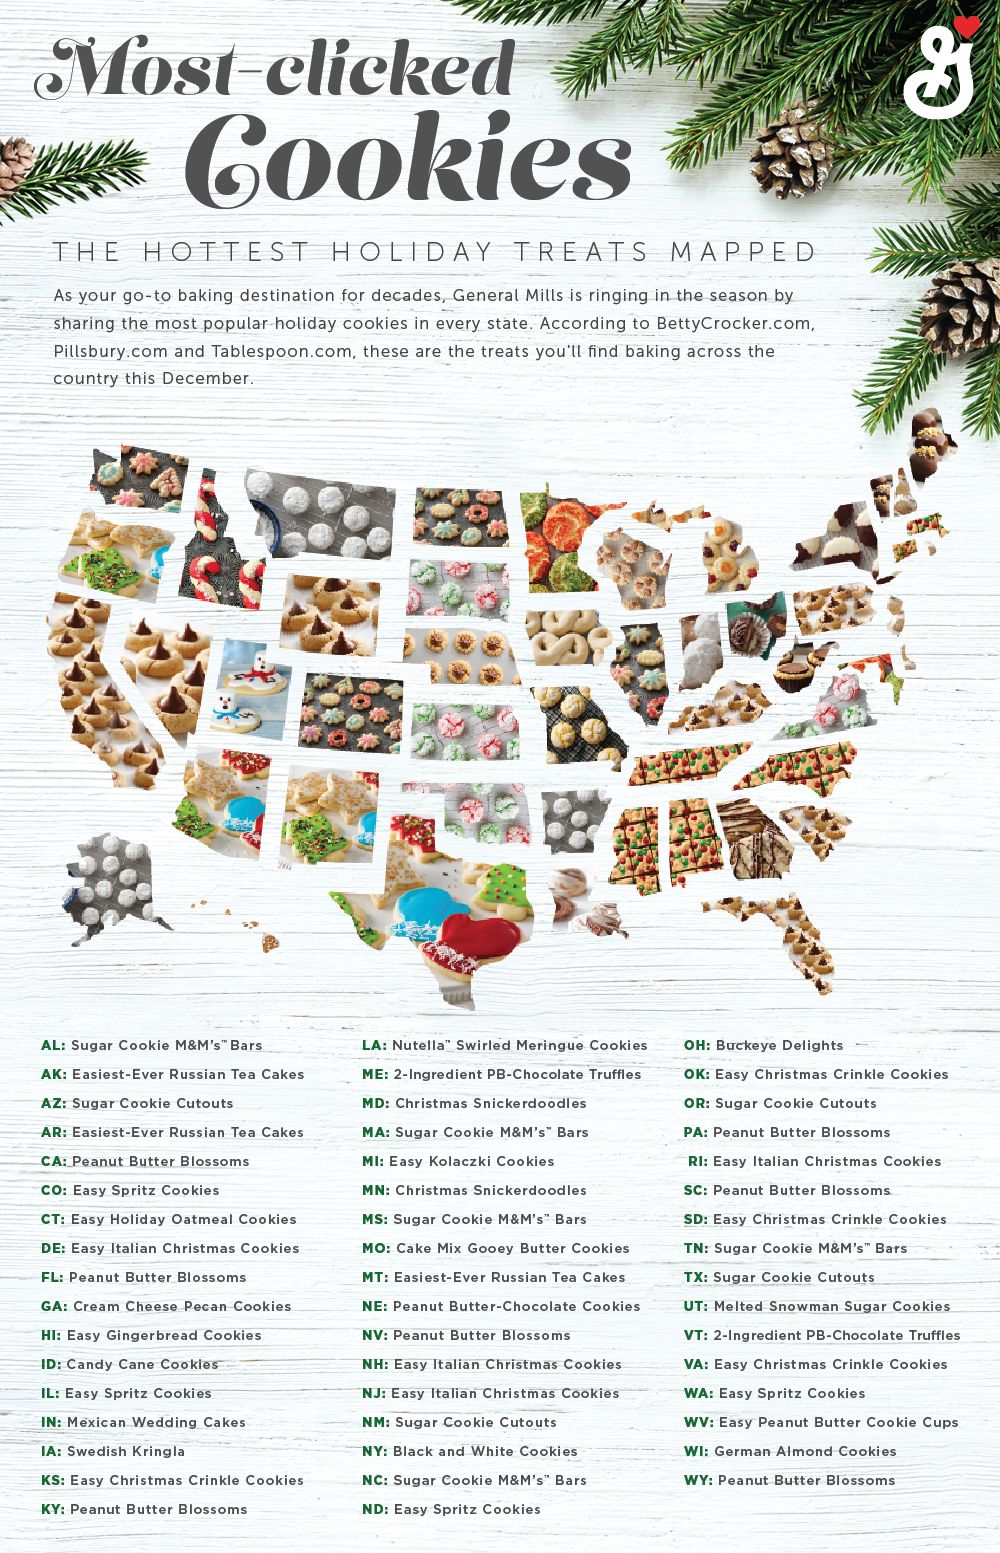 General Mills'e göre Amerika'daki favori kurabiyeler ve en popüler Noel kurabiyeleri